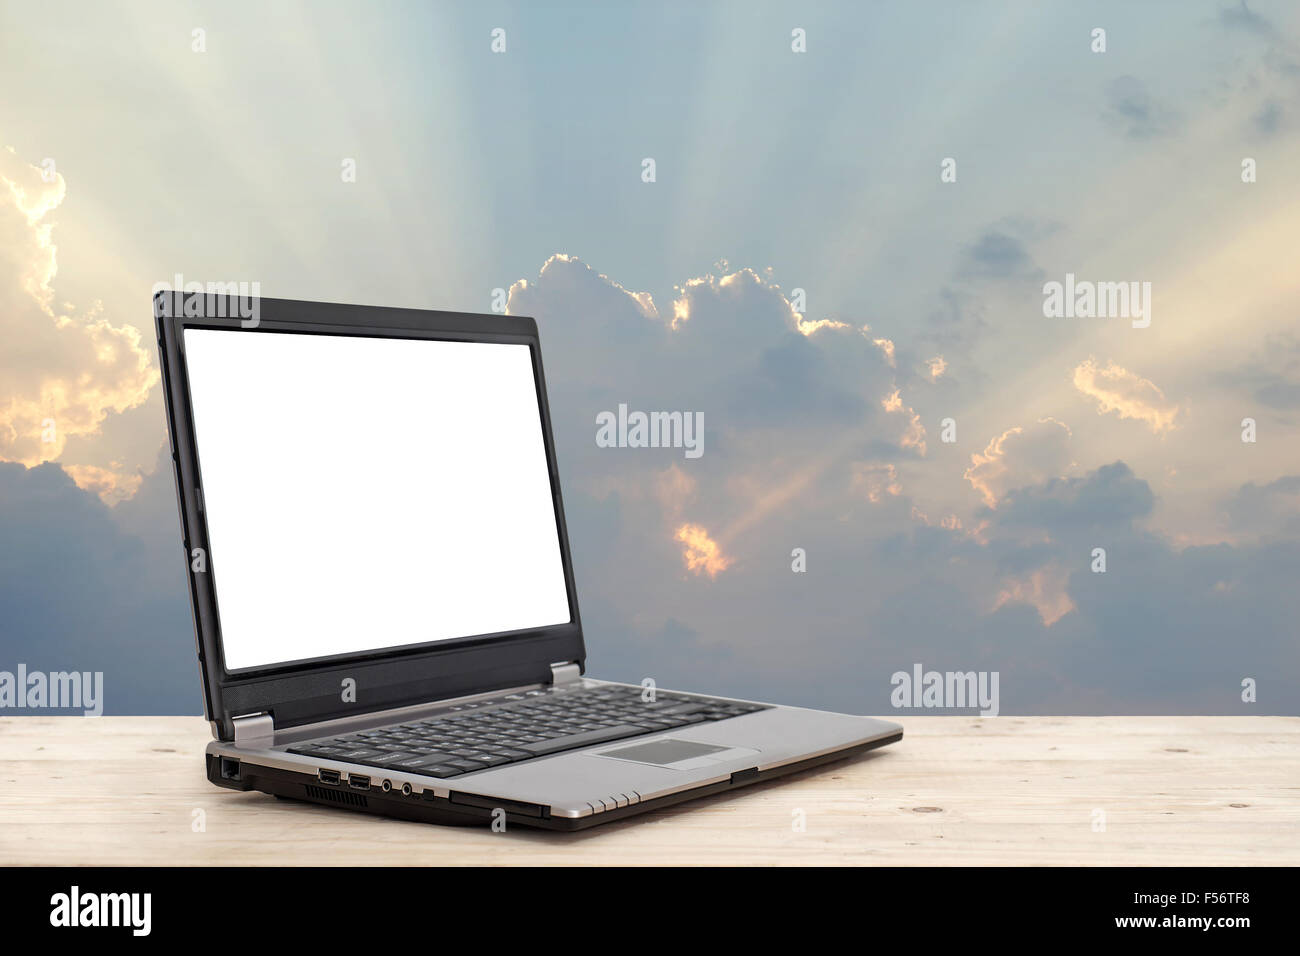 Laptop mit leeren Bildschirm auf Holztisch mit schönen Sonnenstrahl Hintergrund Konzept Geschäftsidee Stockfoto